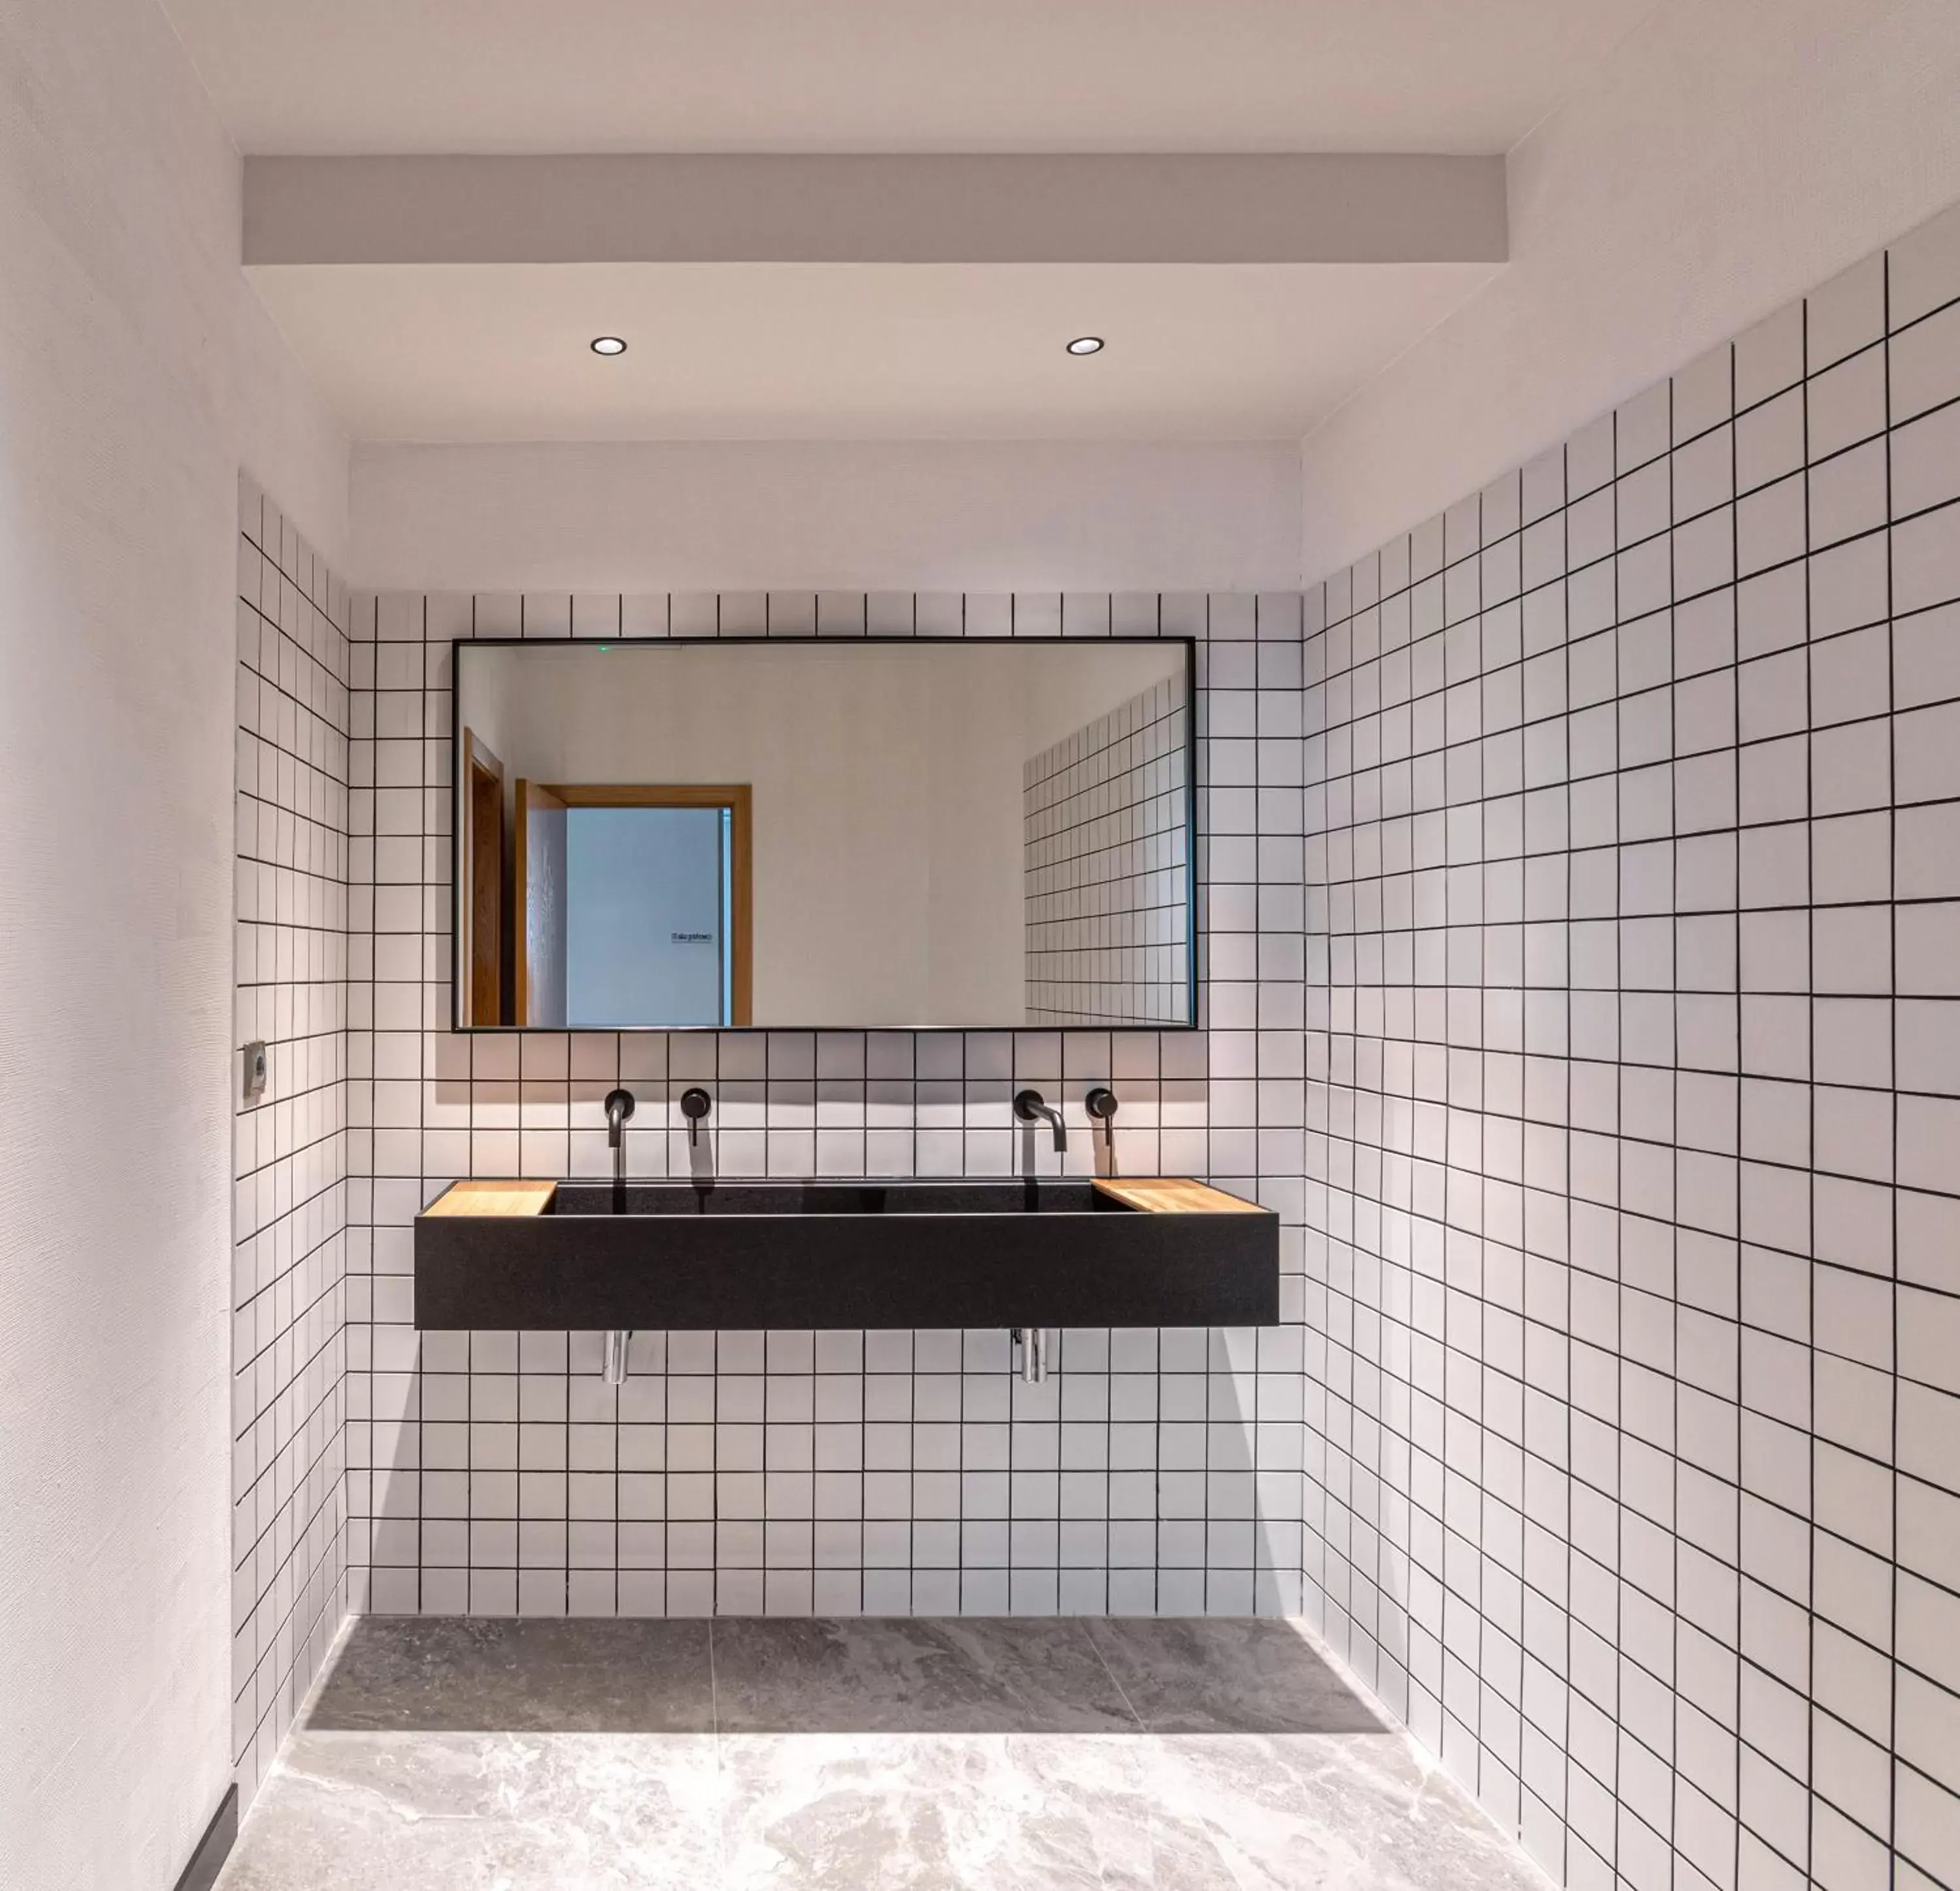 Area and facilities, Bathroom in Hotel Forum Ceao